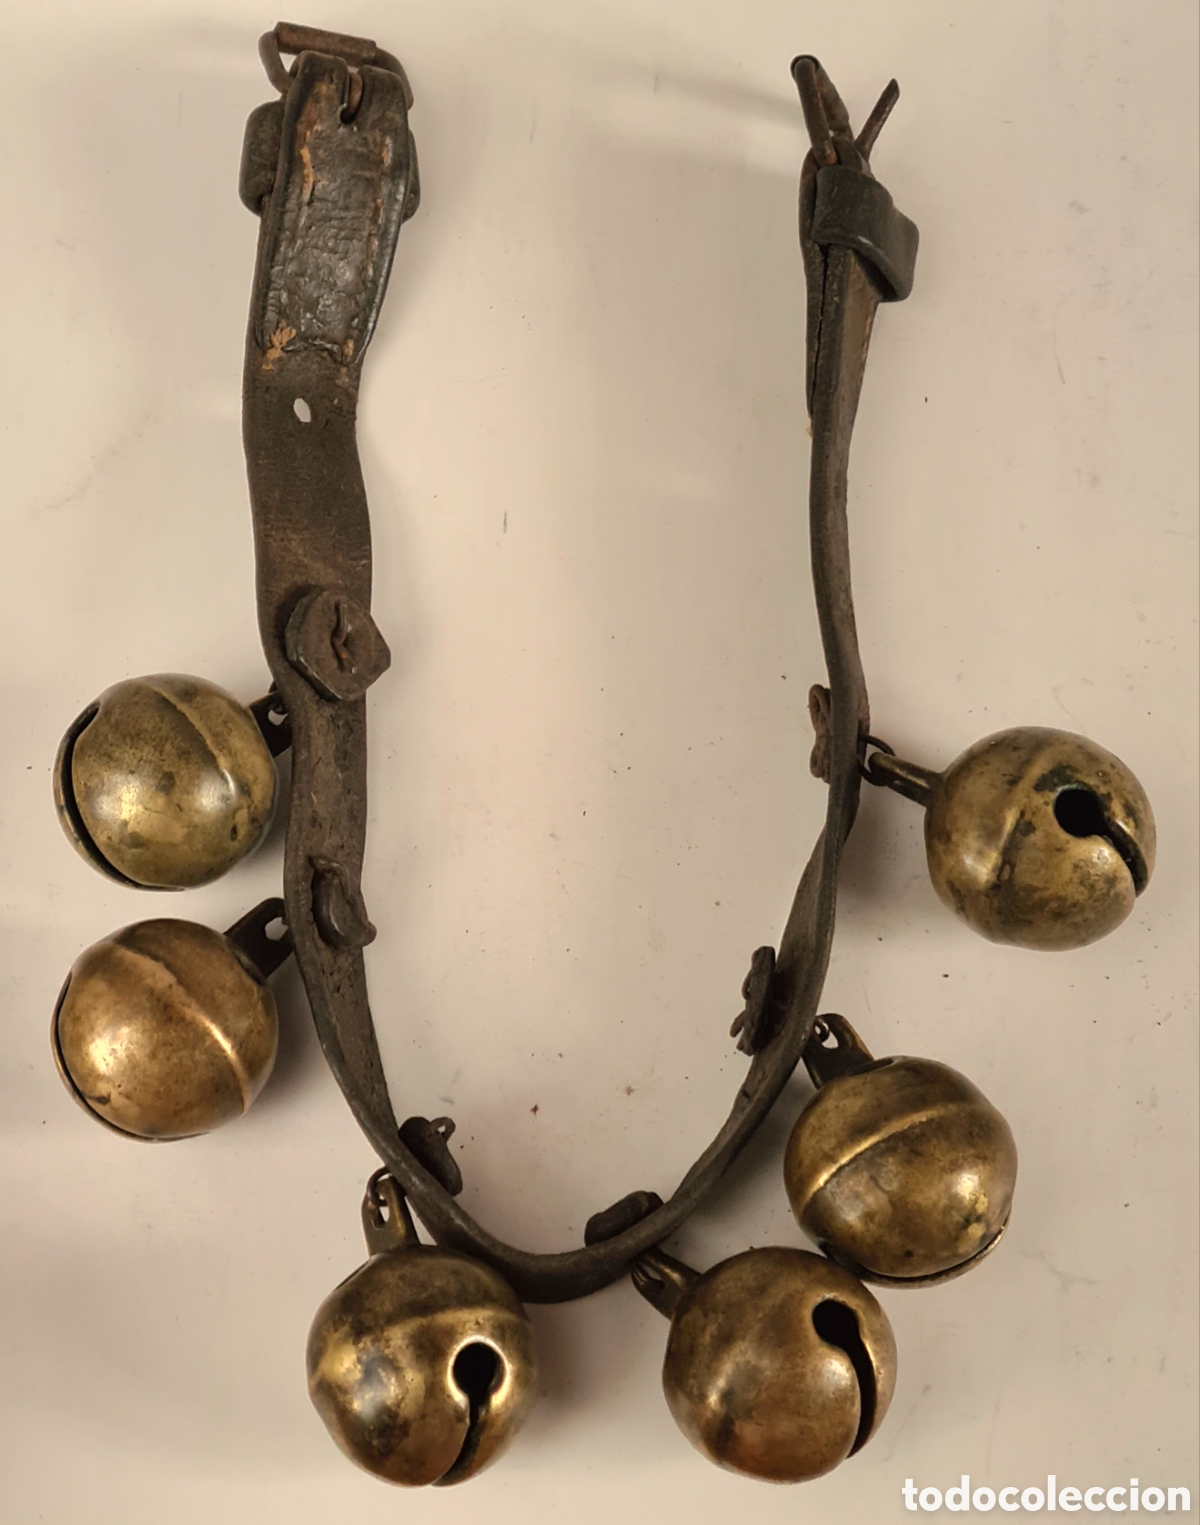 collar de cuero y 6 cascabeles grandes para cab - Acheter Antiquités  équestres et matériel d'équitation ancien sur todocoleccion